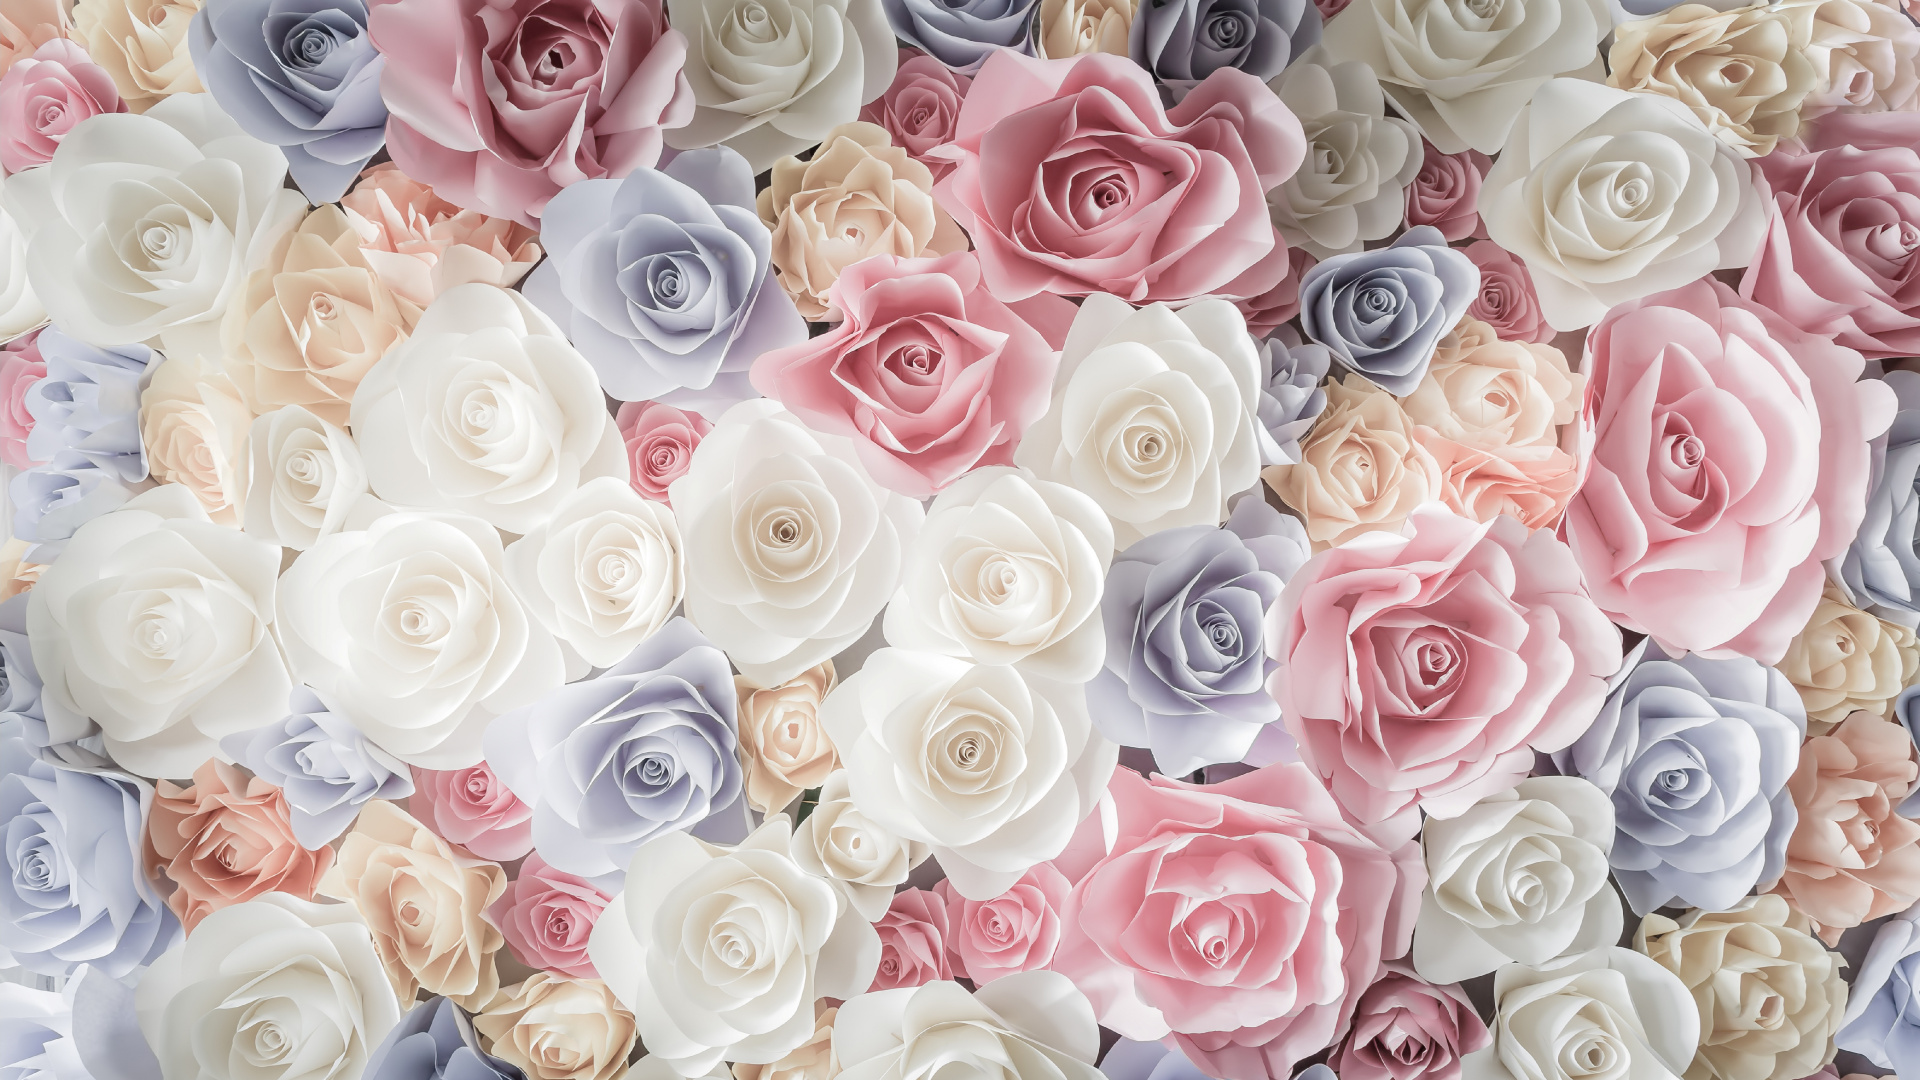 玫瑰花园, 切花, 粉红色, 玫瑰家庭, 花卉设计 壁纸 1920x1080 允许